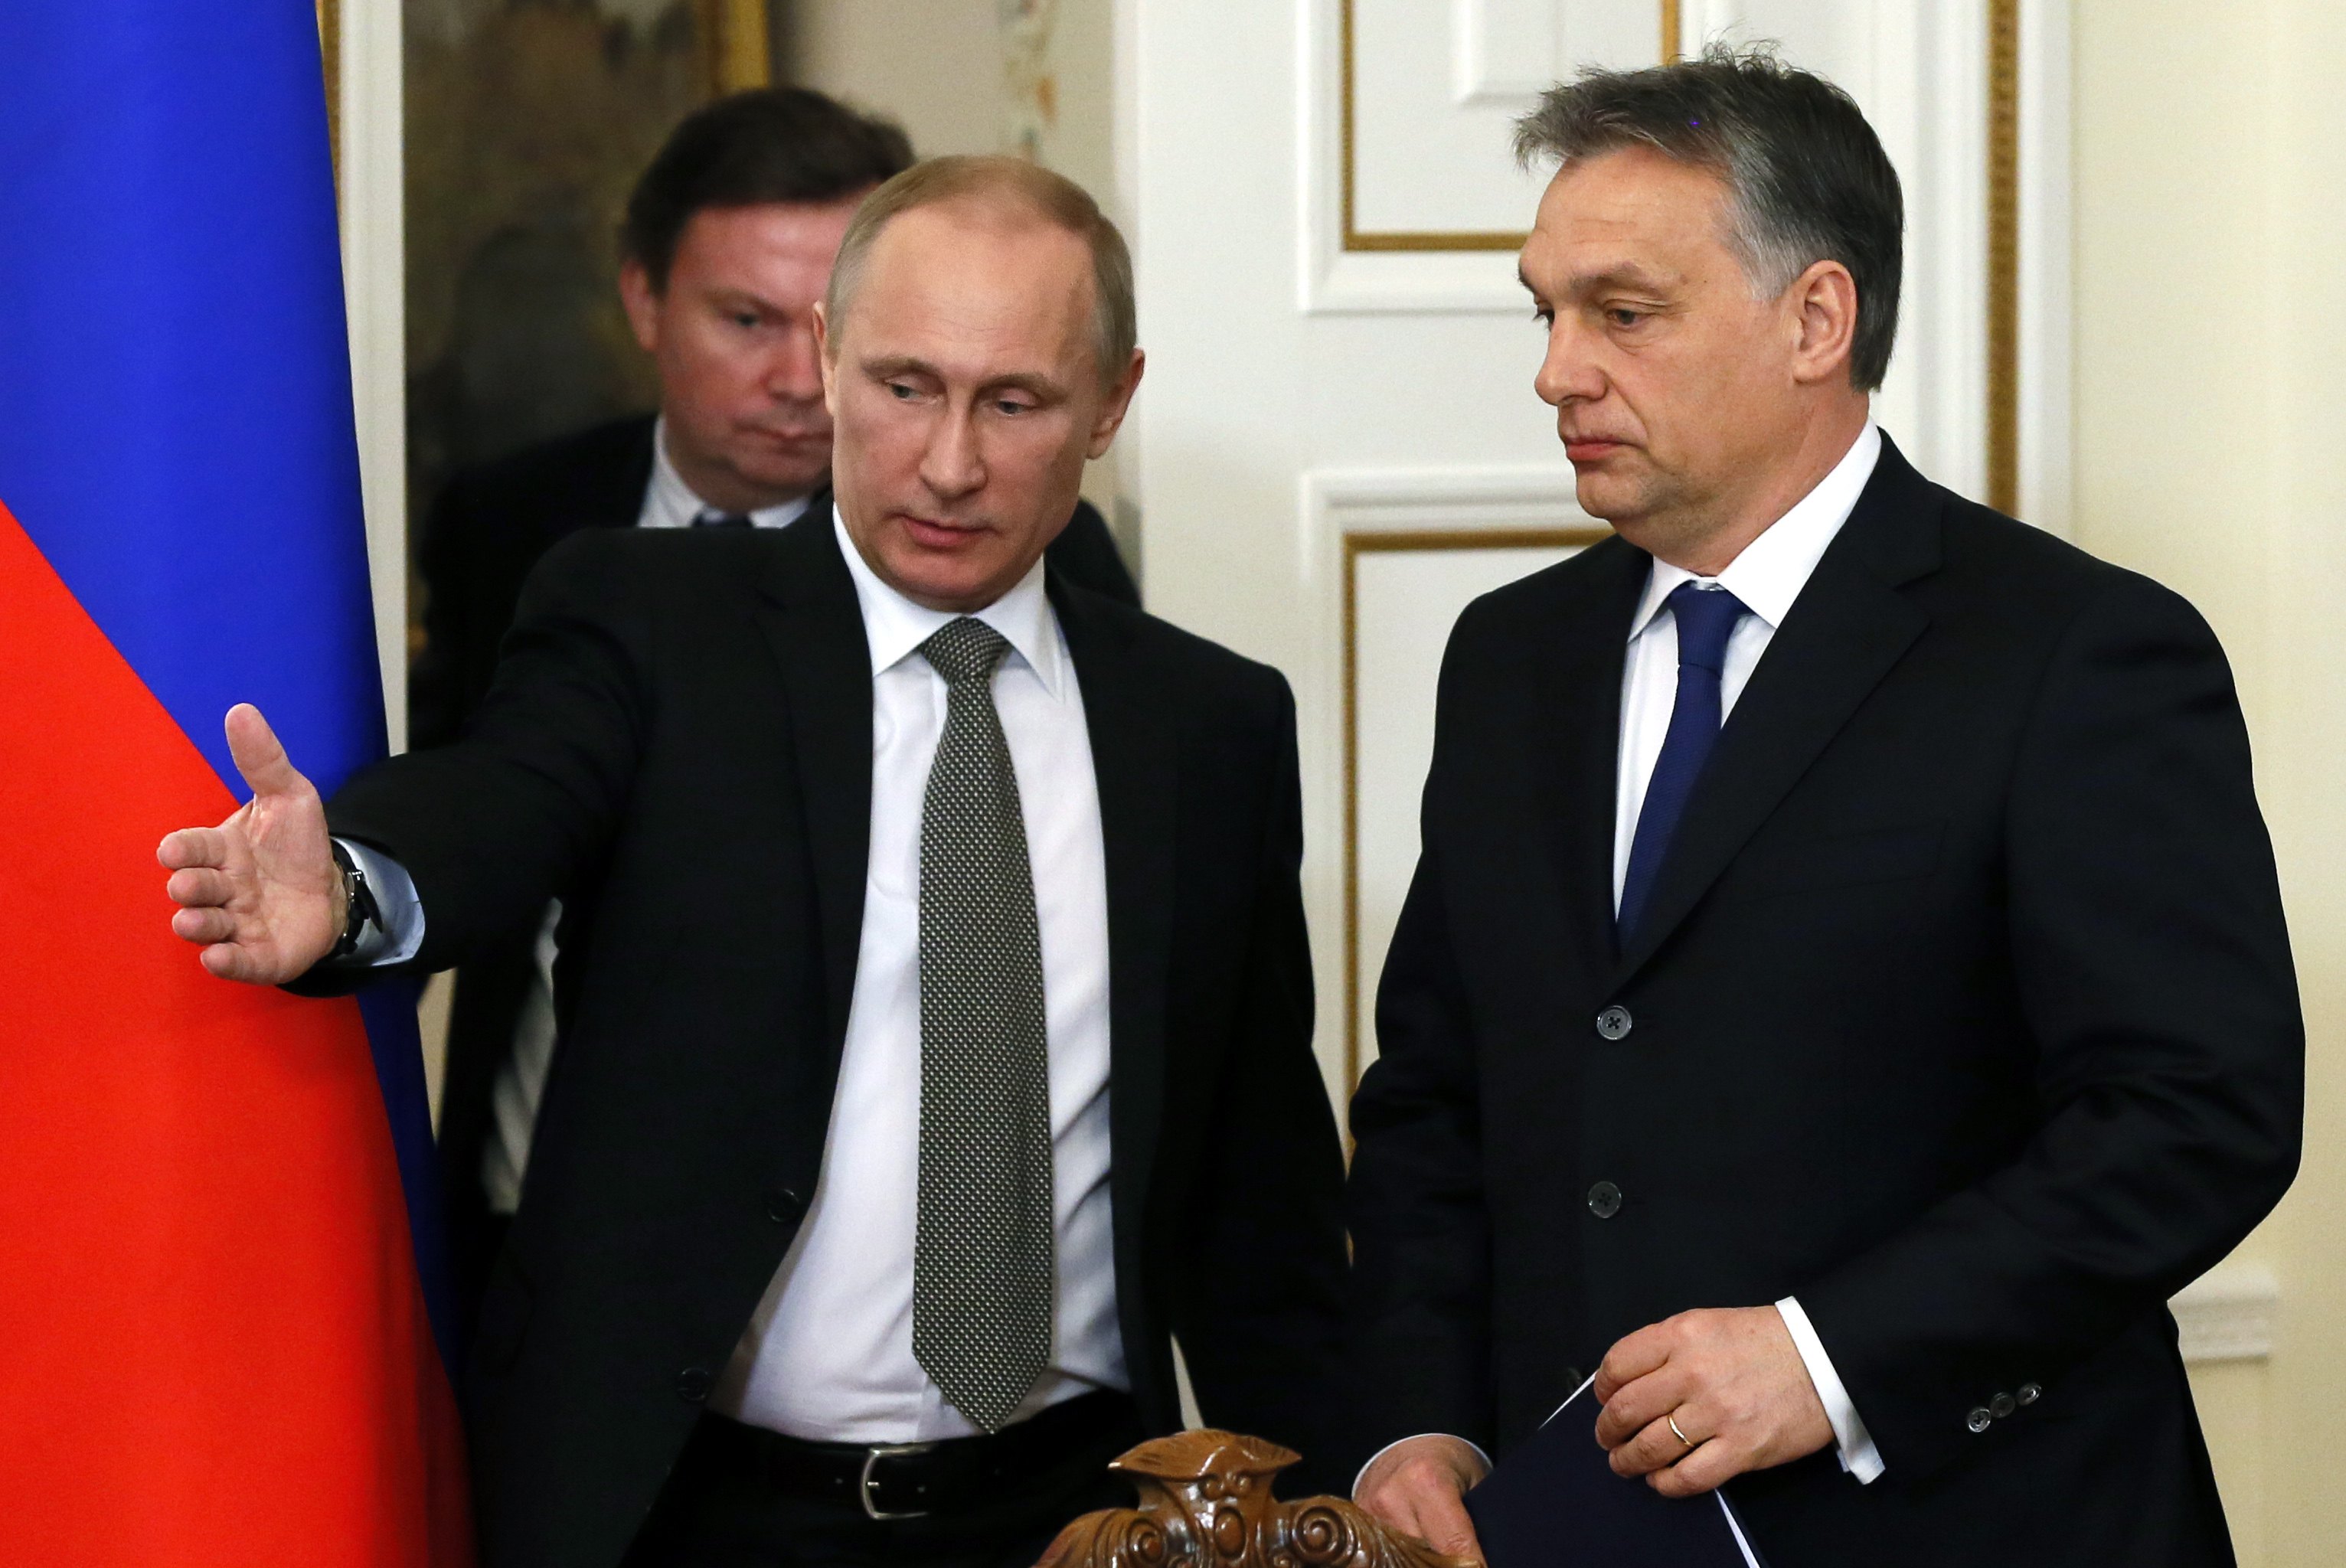 Putyin és Orbán a novo-ogarjevói orosz államfői rezidencián. A magyar kormányfő azt mondta, nagyra értékeli azt a fejlődést, amelyet Putyin vezetésével Oroszország mutat